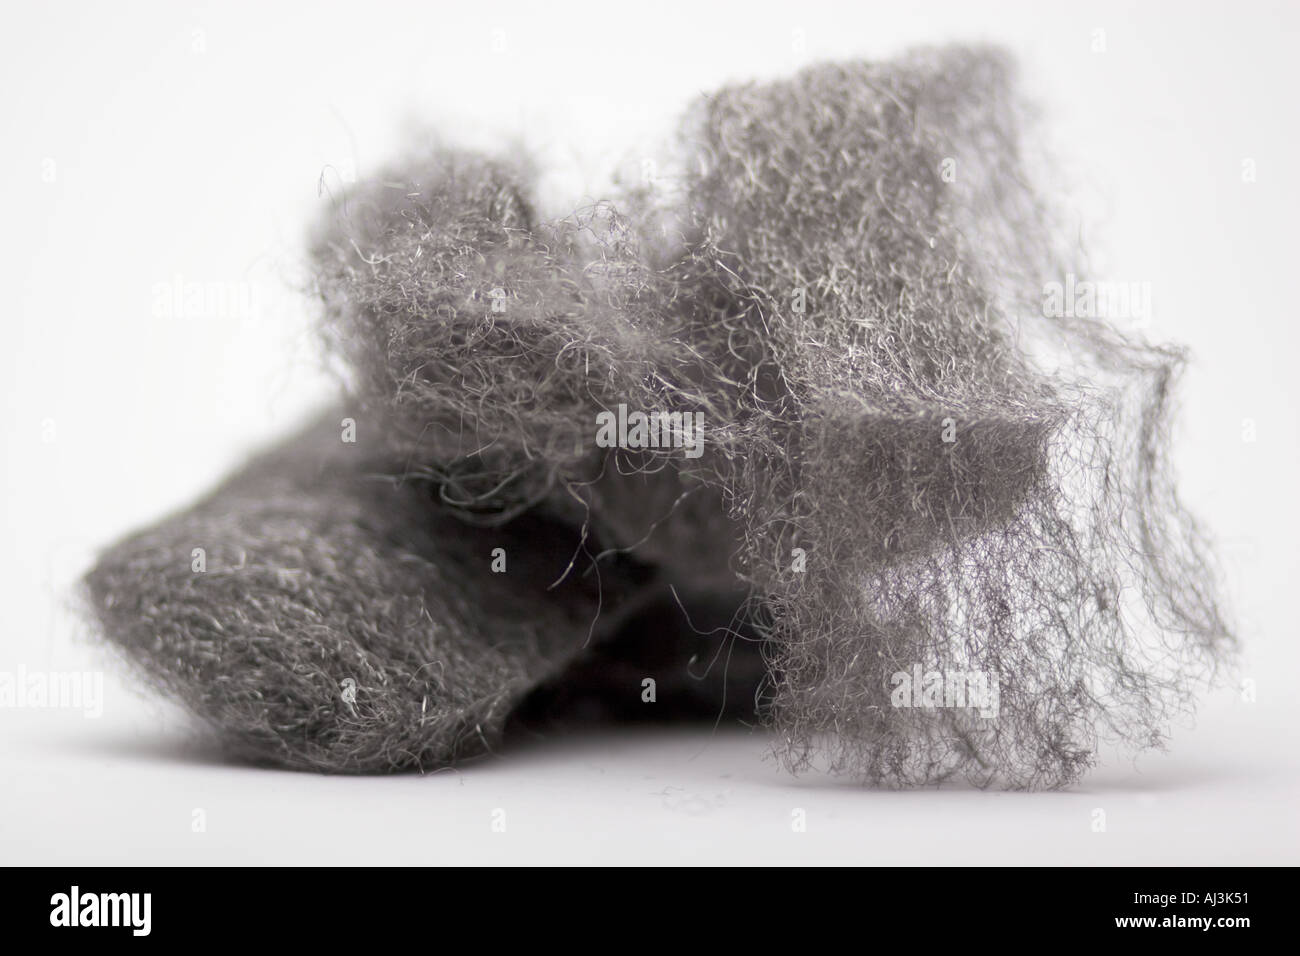 La lana di acciaio acciaio scrubbing pad tampone di lucidatura del legno scrubbing per lucidatura Foto Stock